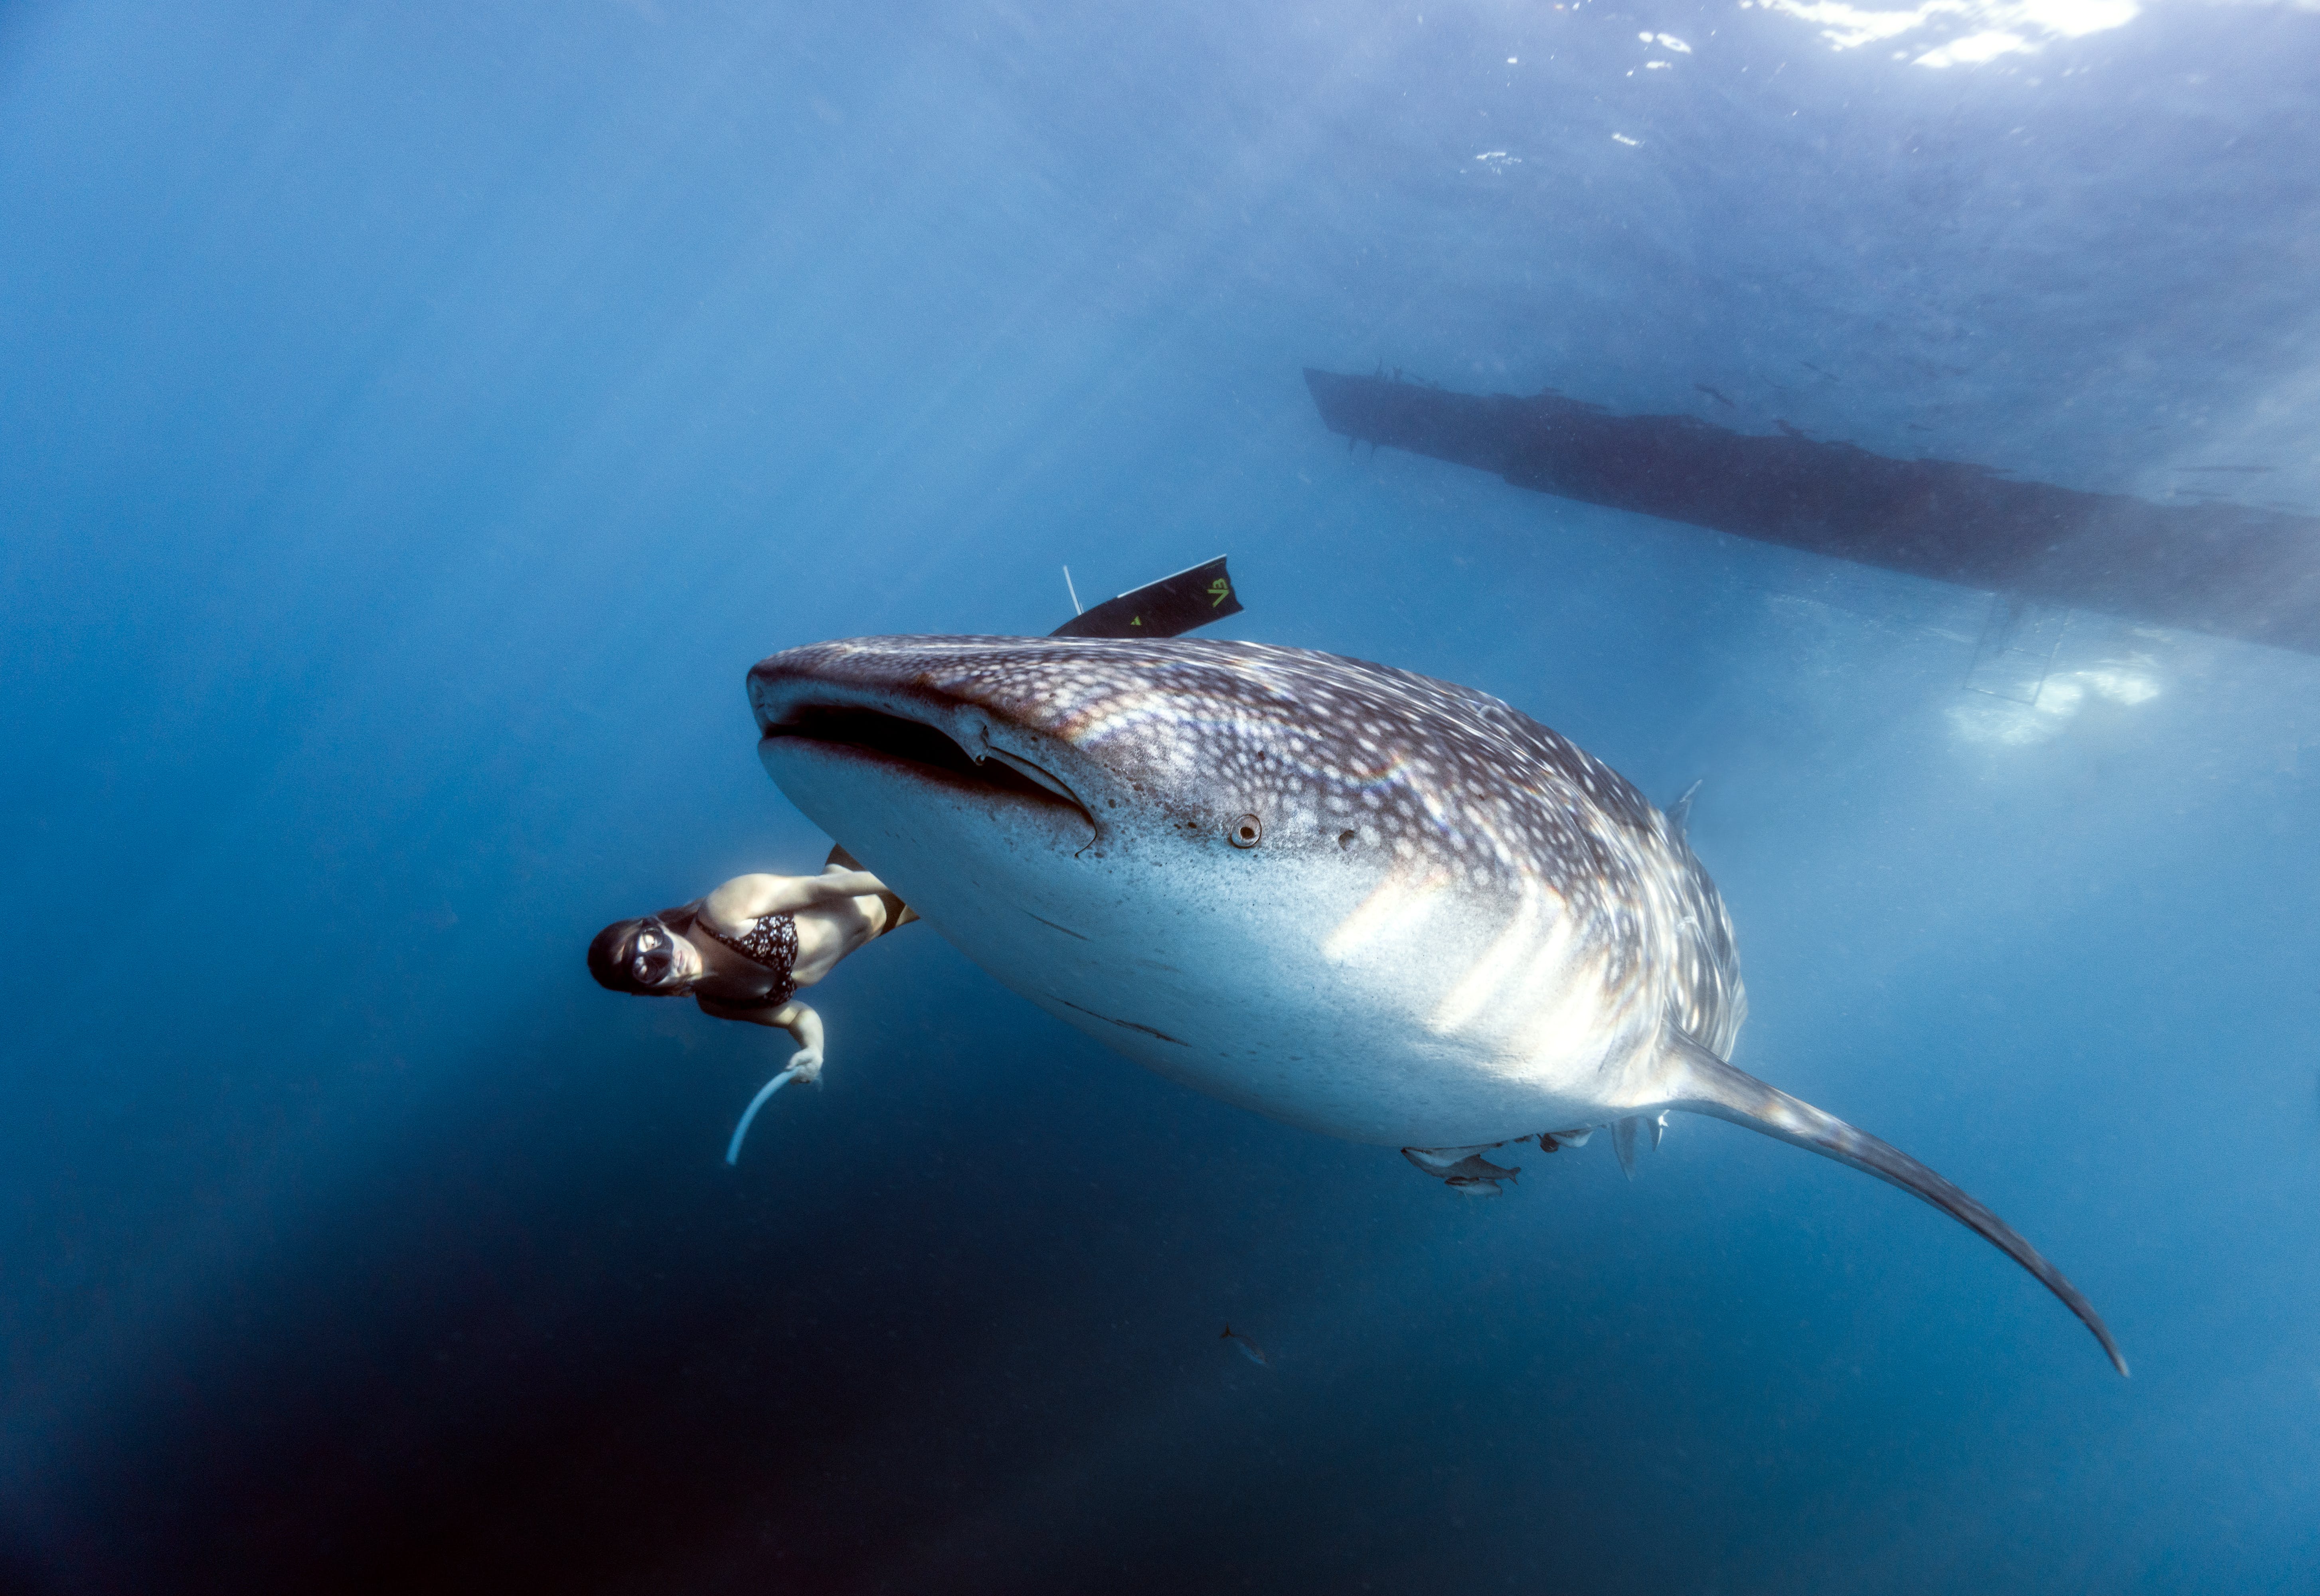 Gratis Fotos de stock gratuitas de animal marino, animales acuáticos, bajo el agua Foto de stock